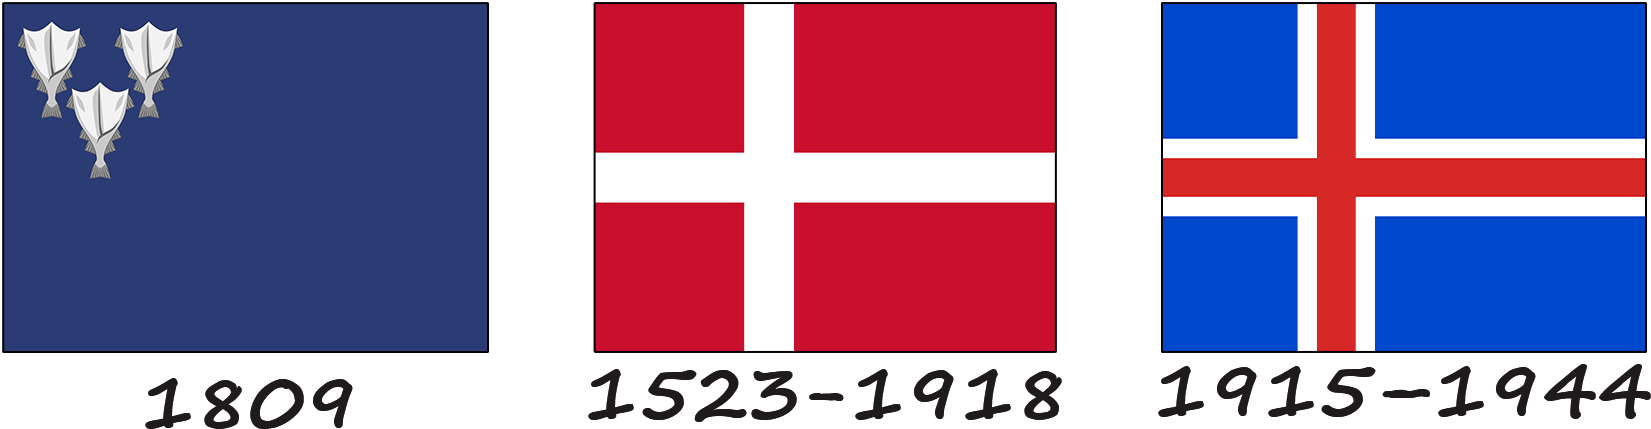 Historia de la bandera de Islandia